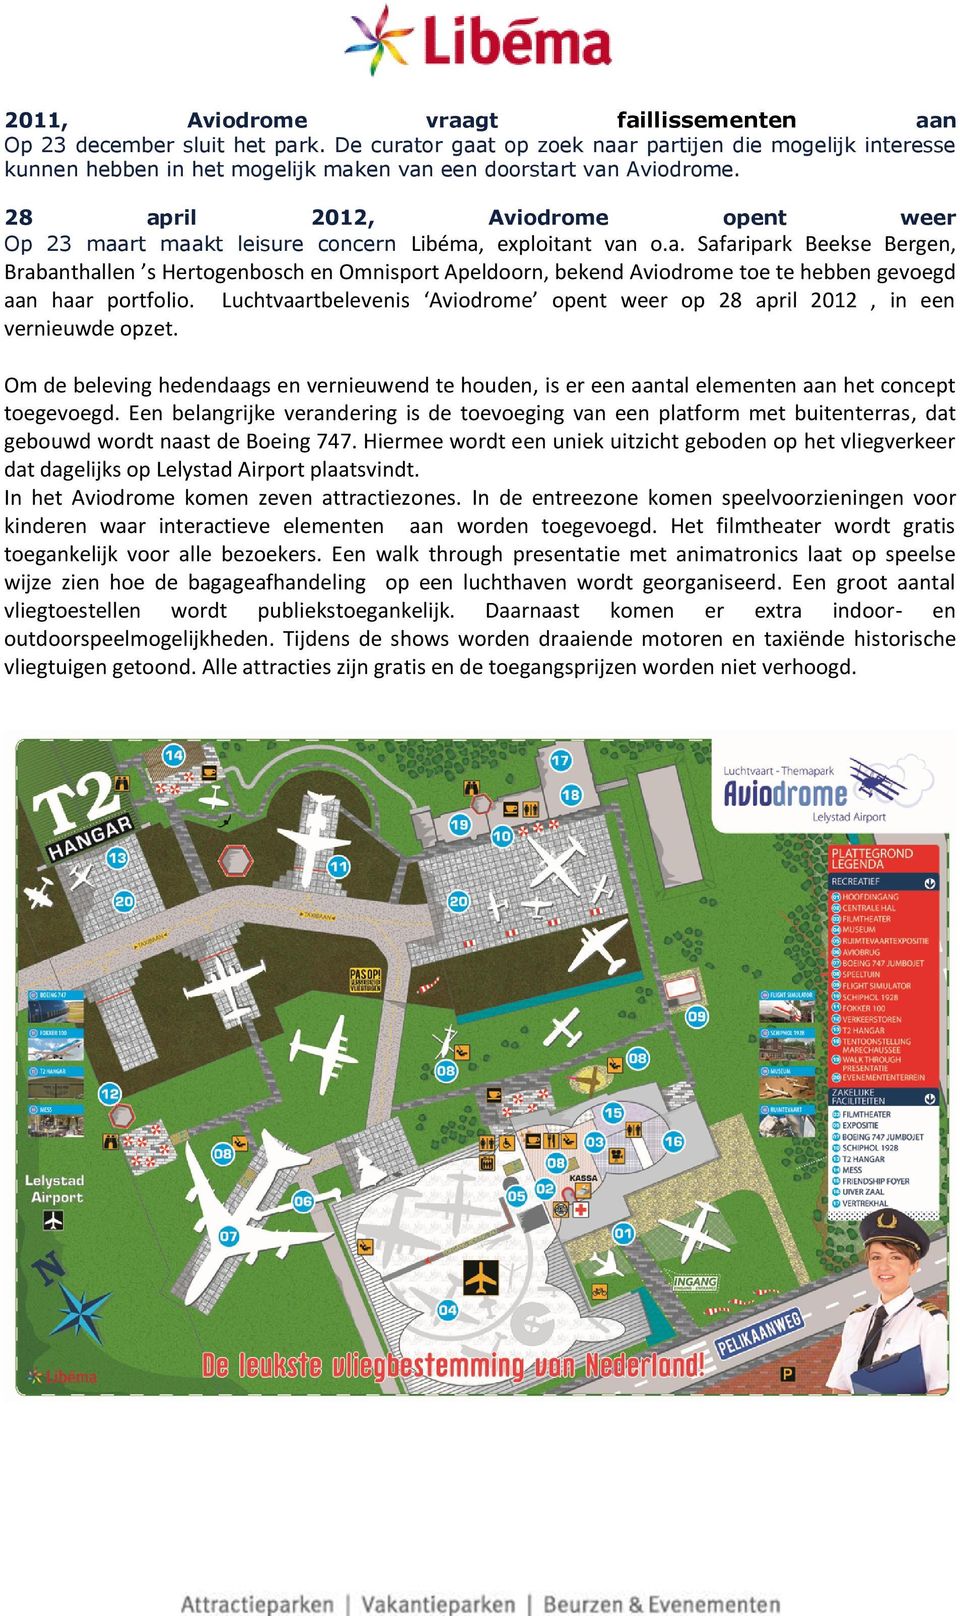 28 april 2012, Aviodrome opent weer Op 23 maart maakt leisure concern Libéma, exploitant van o.a. Safaripark Beekse Bergen, Brabanthallen s Hertogenbosch en Omnisport Apeldoorn, bekend Aviodrome toe te hebben gevoegd aan haar portfolio.